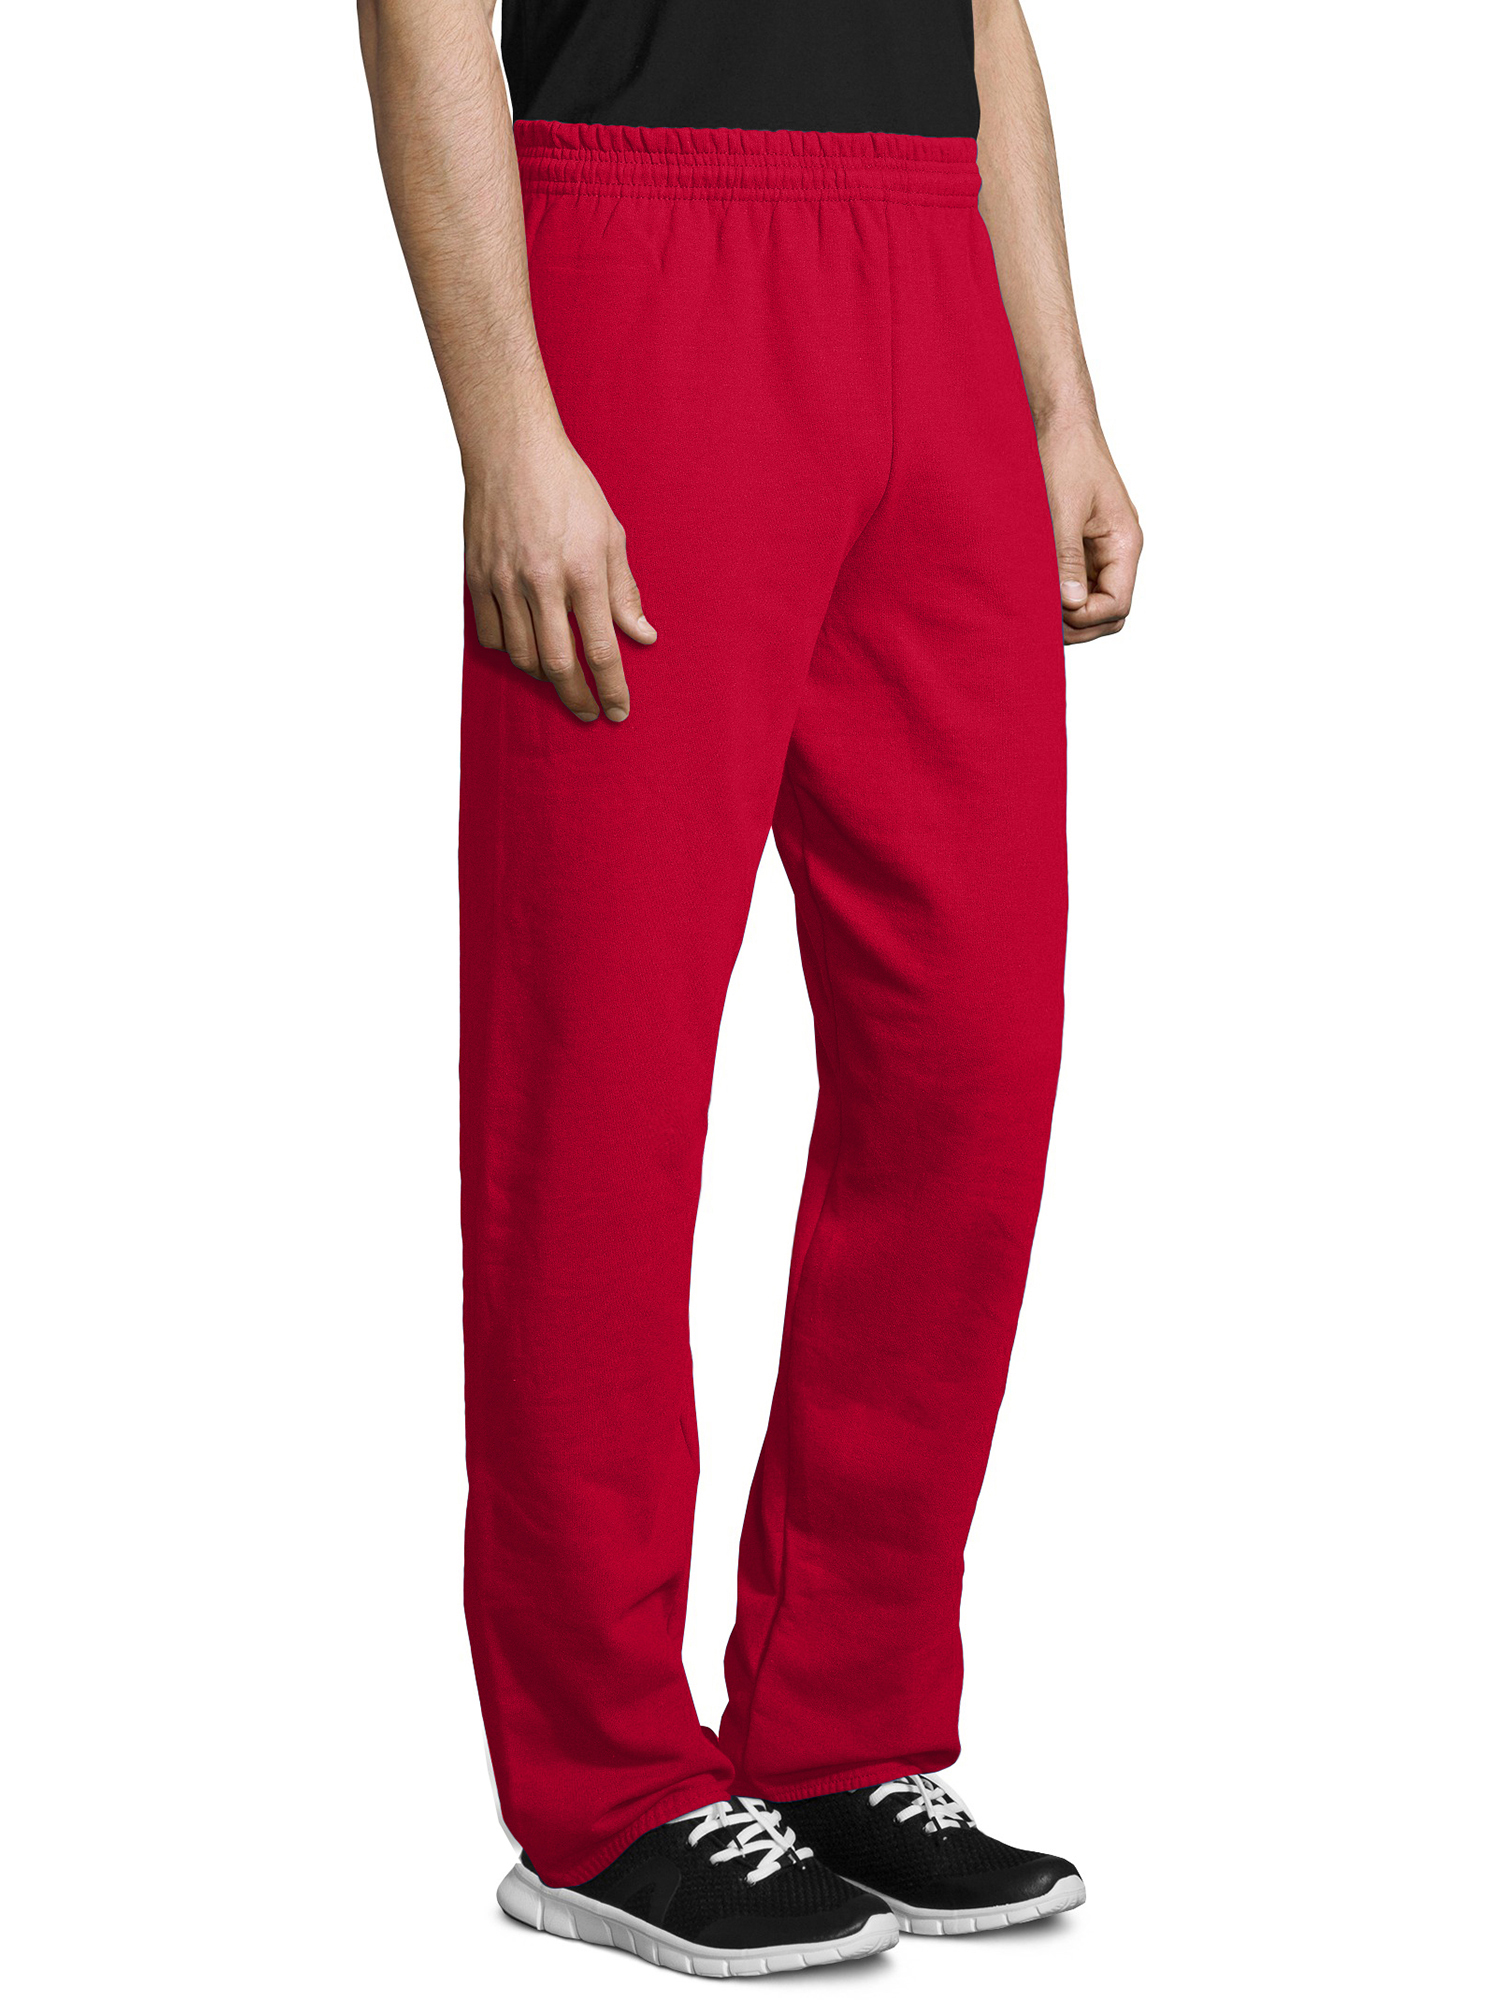 Hanes Men's and Big Men's EcoSmart Fleece Sweatpants, Sizes S-3XL - image 3 of 6